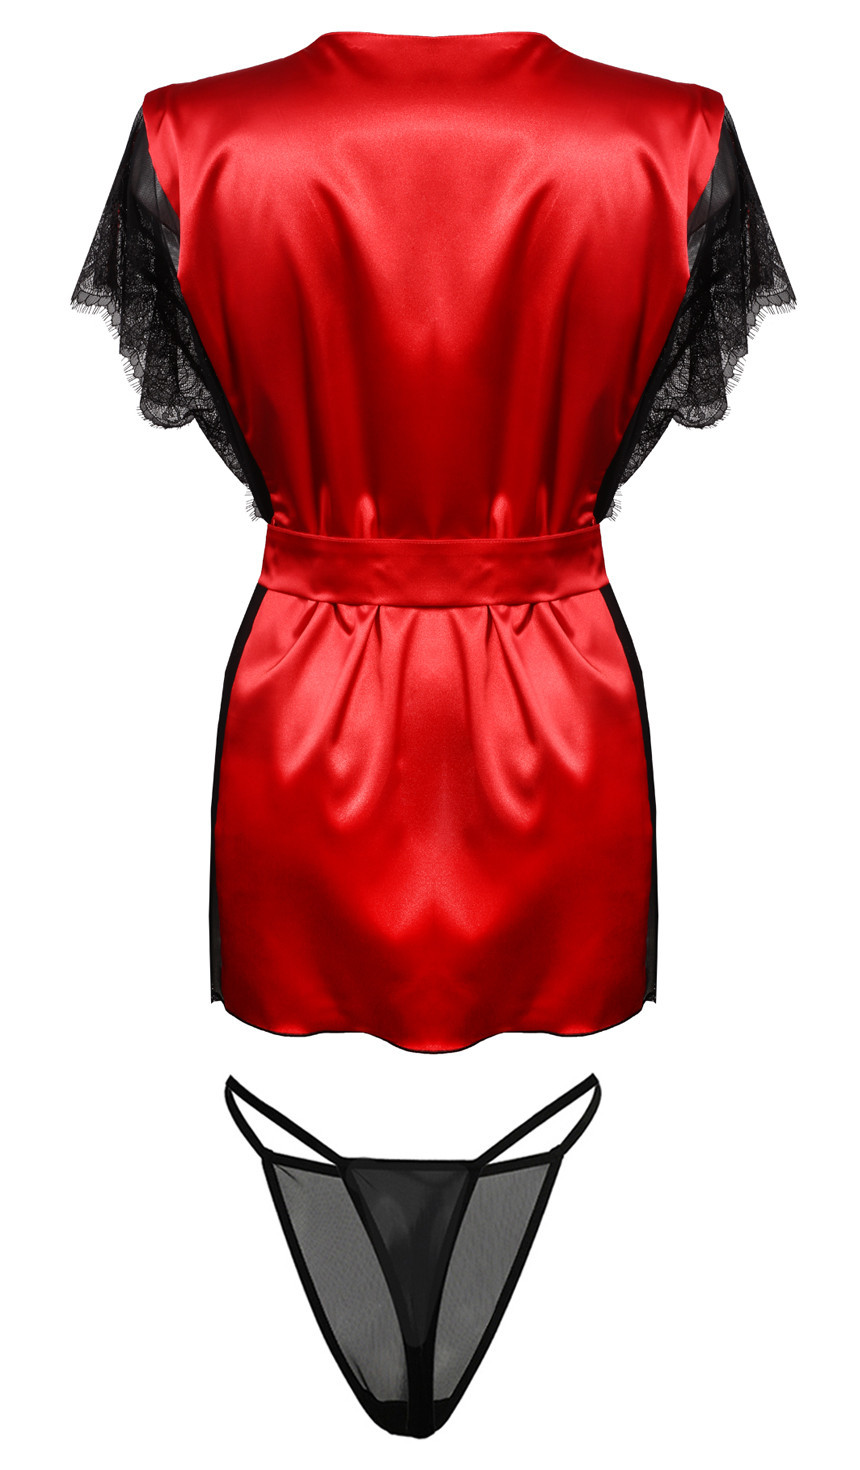 Housecoat model 18240905 Red XXL - DKaren